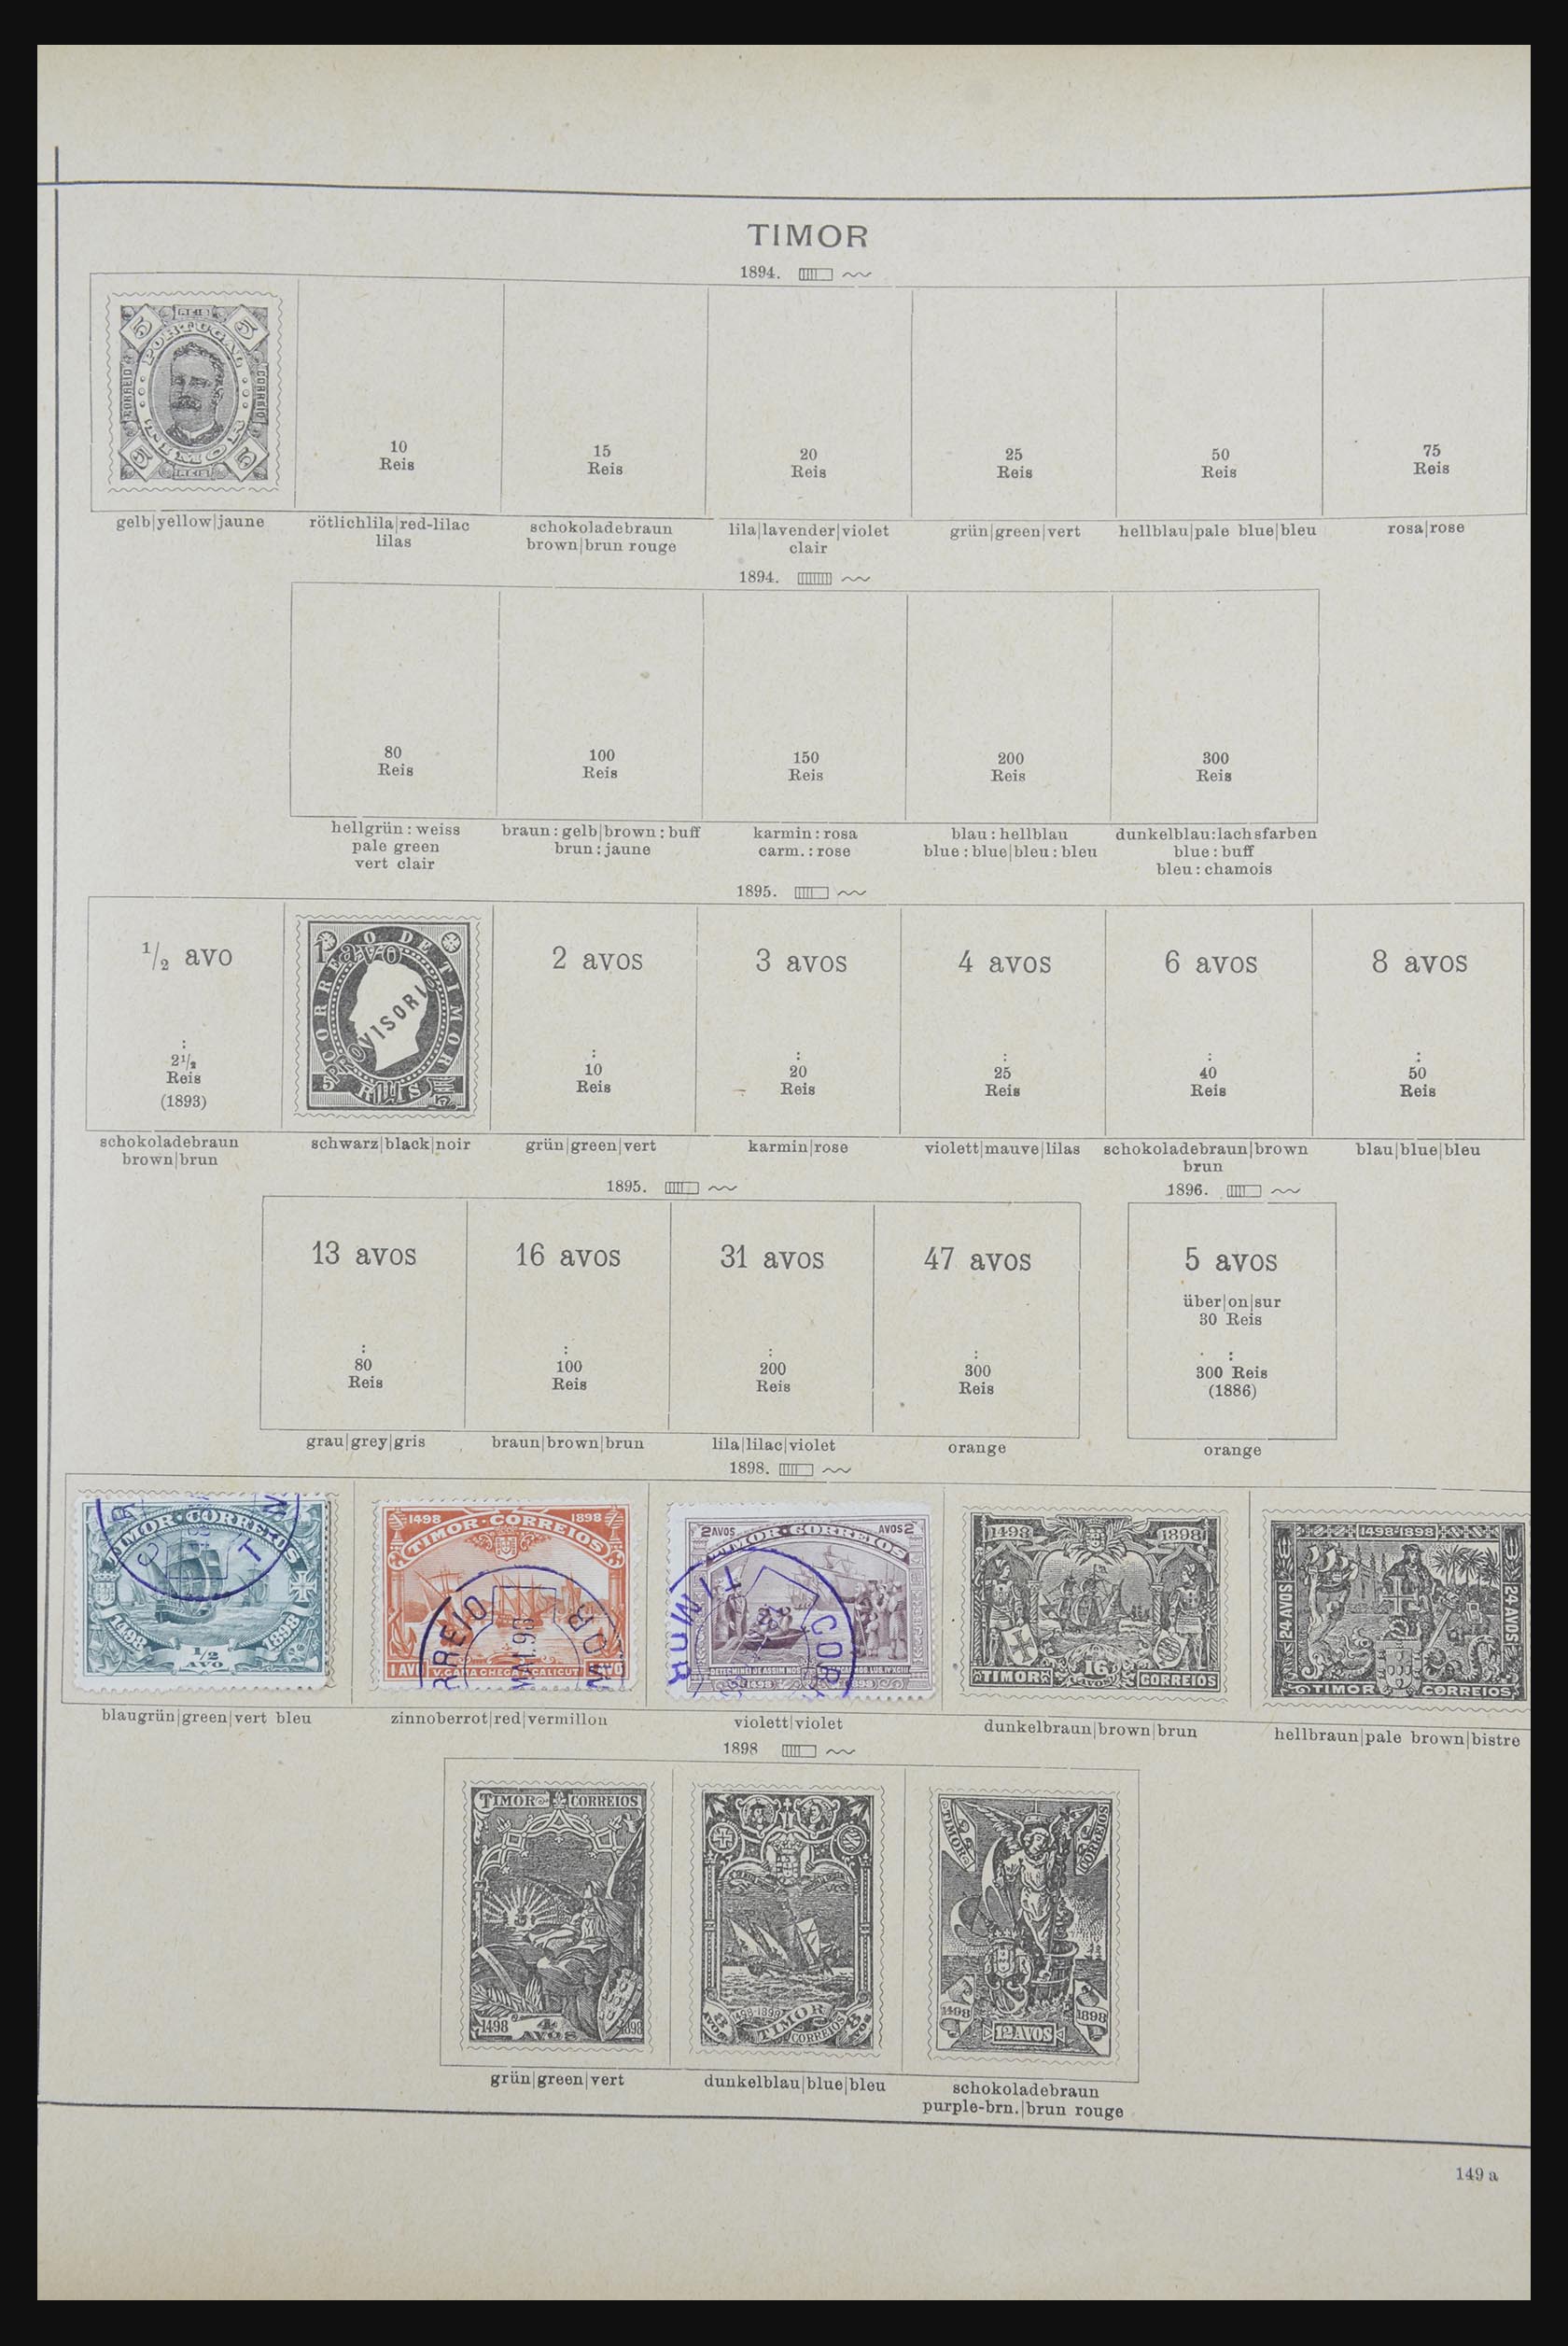 32070 149 - 32070 Portugal en koloniën 1857-1953.